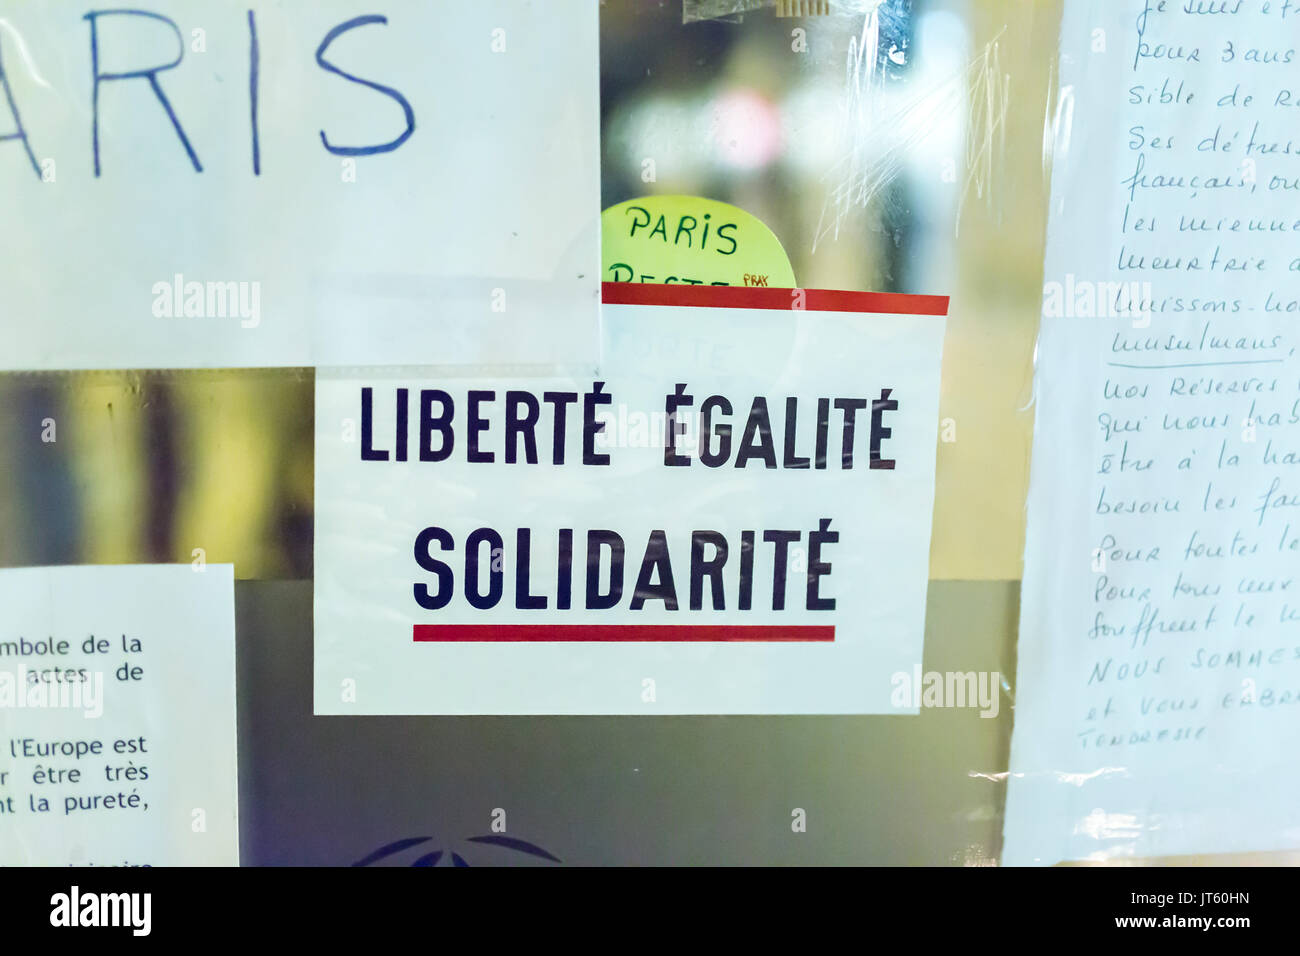 Liberté égalité solidarité Freiheit Gleichheit Solidarität. Spontane Hommage an die Opfer der Terroranschläge in Paris, den 13. November 2015. Stockfoto